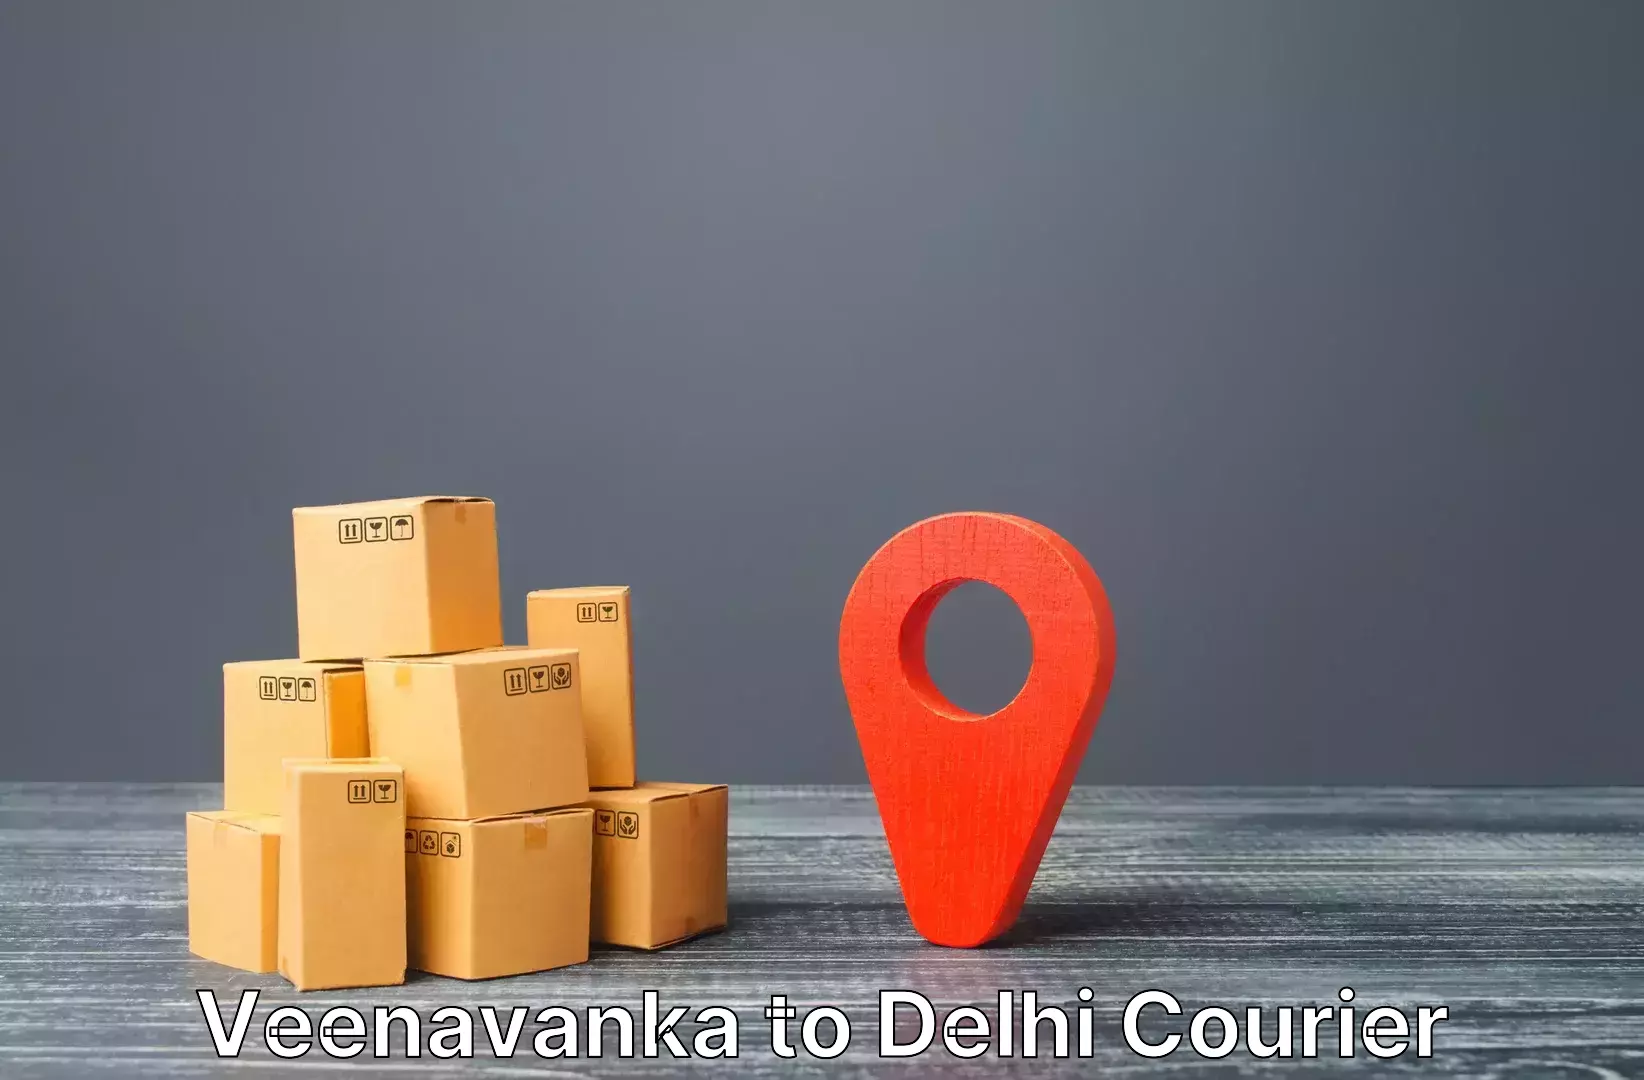 Luggage storage and delivery Veenavanka to Subhash Nagar